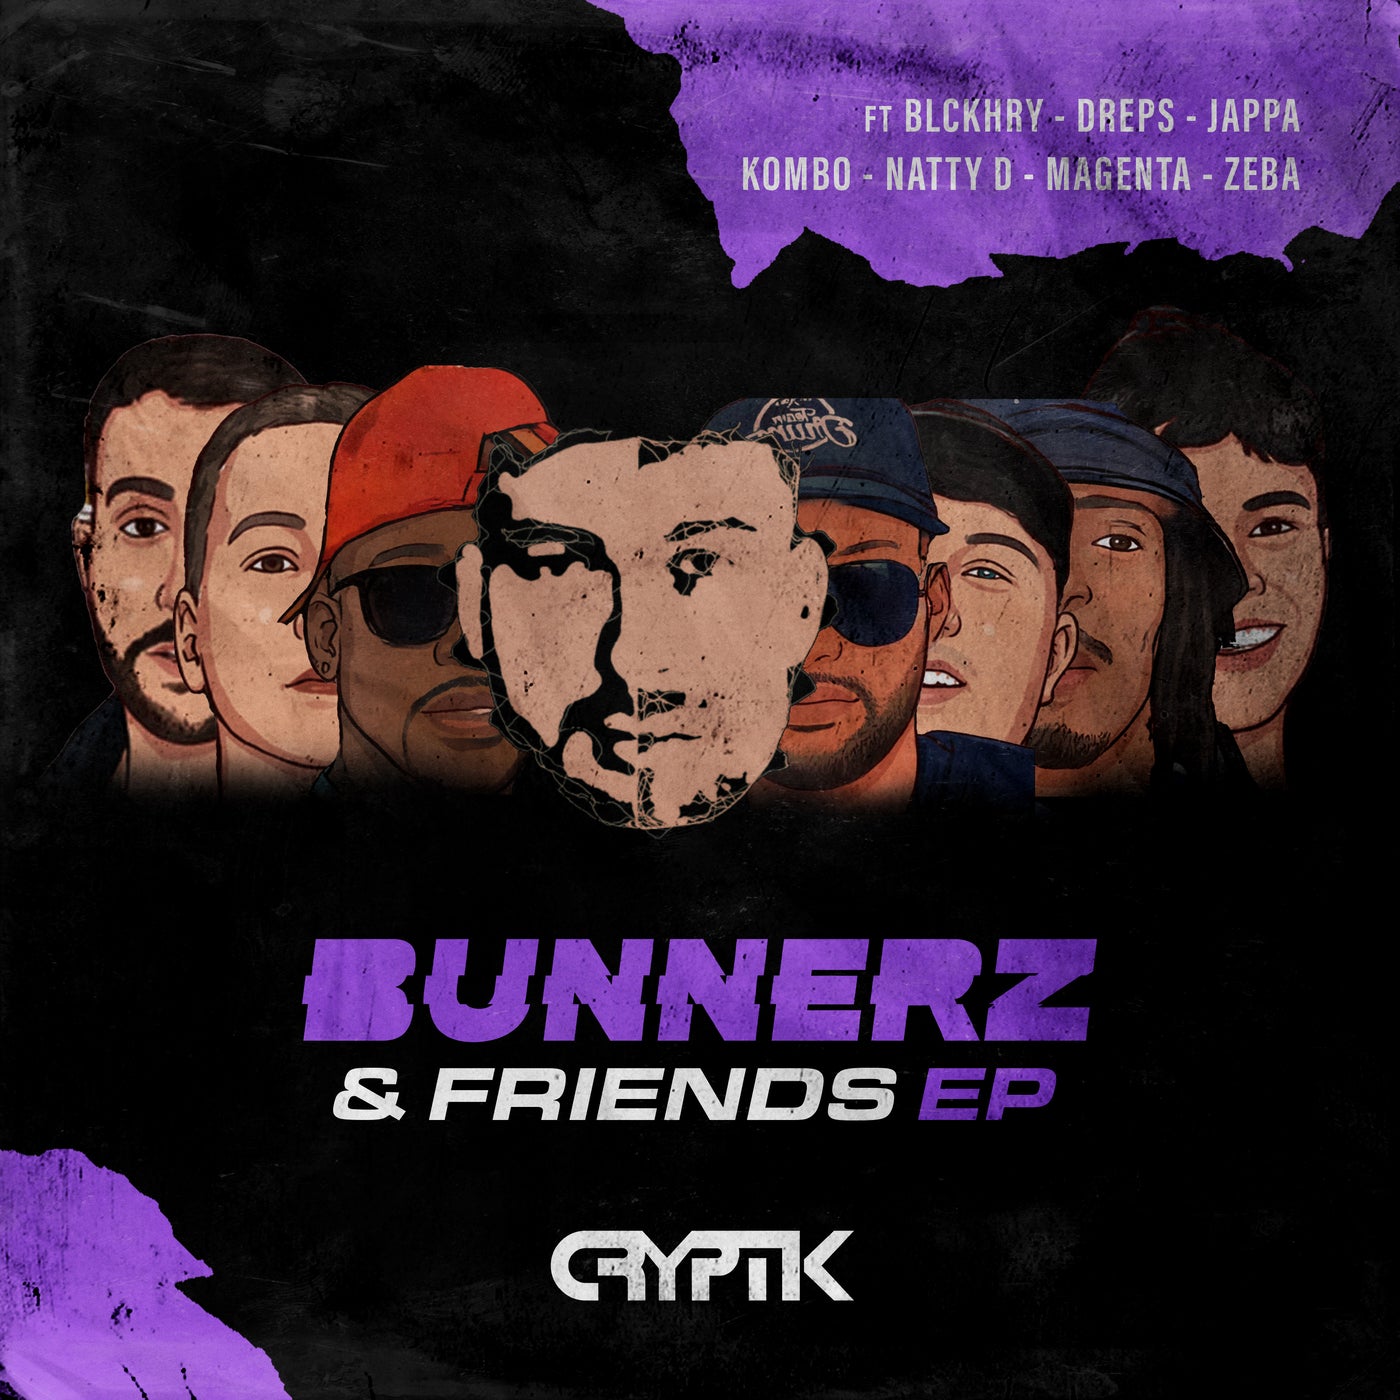 Bunnerz & Friends EP